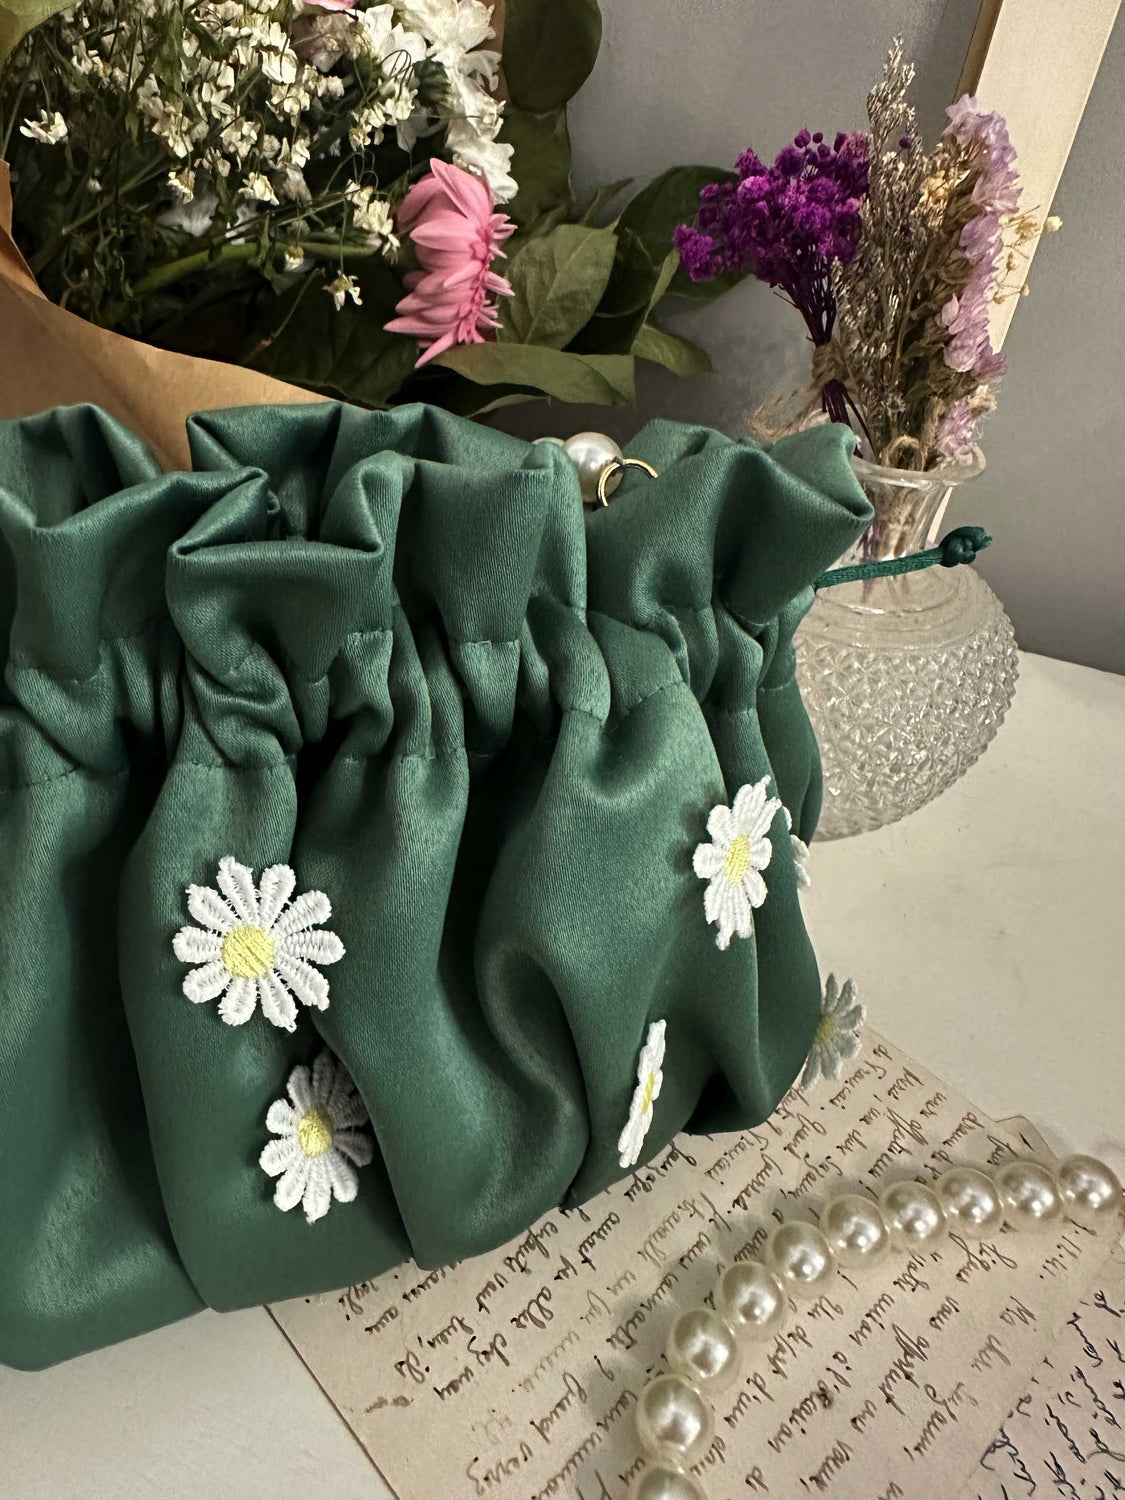 borsa sartoriale in raso verde con margherite bianche cucite in rilievo 